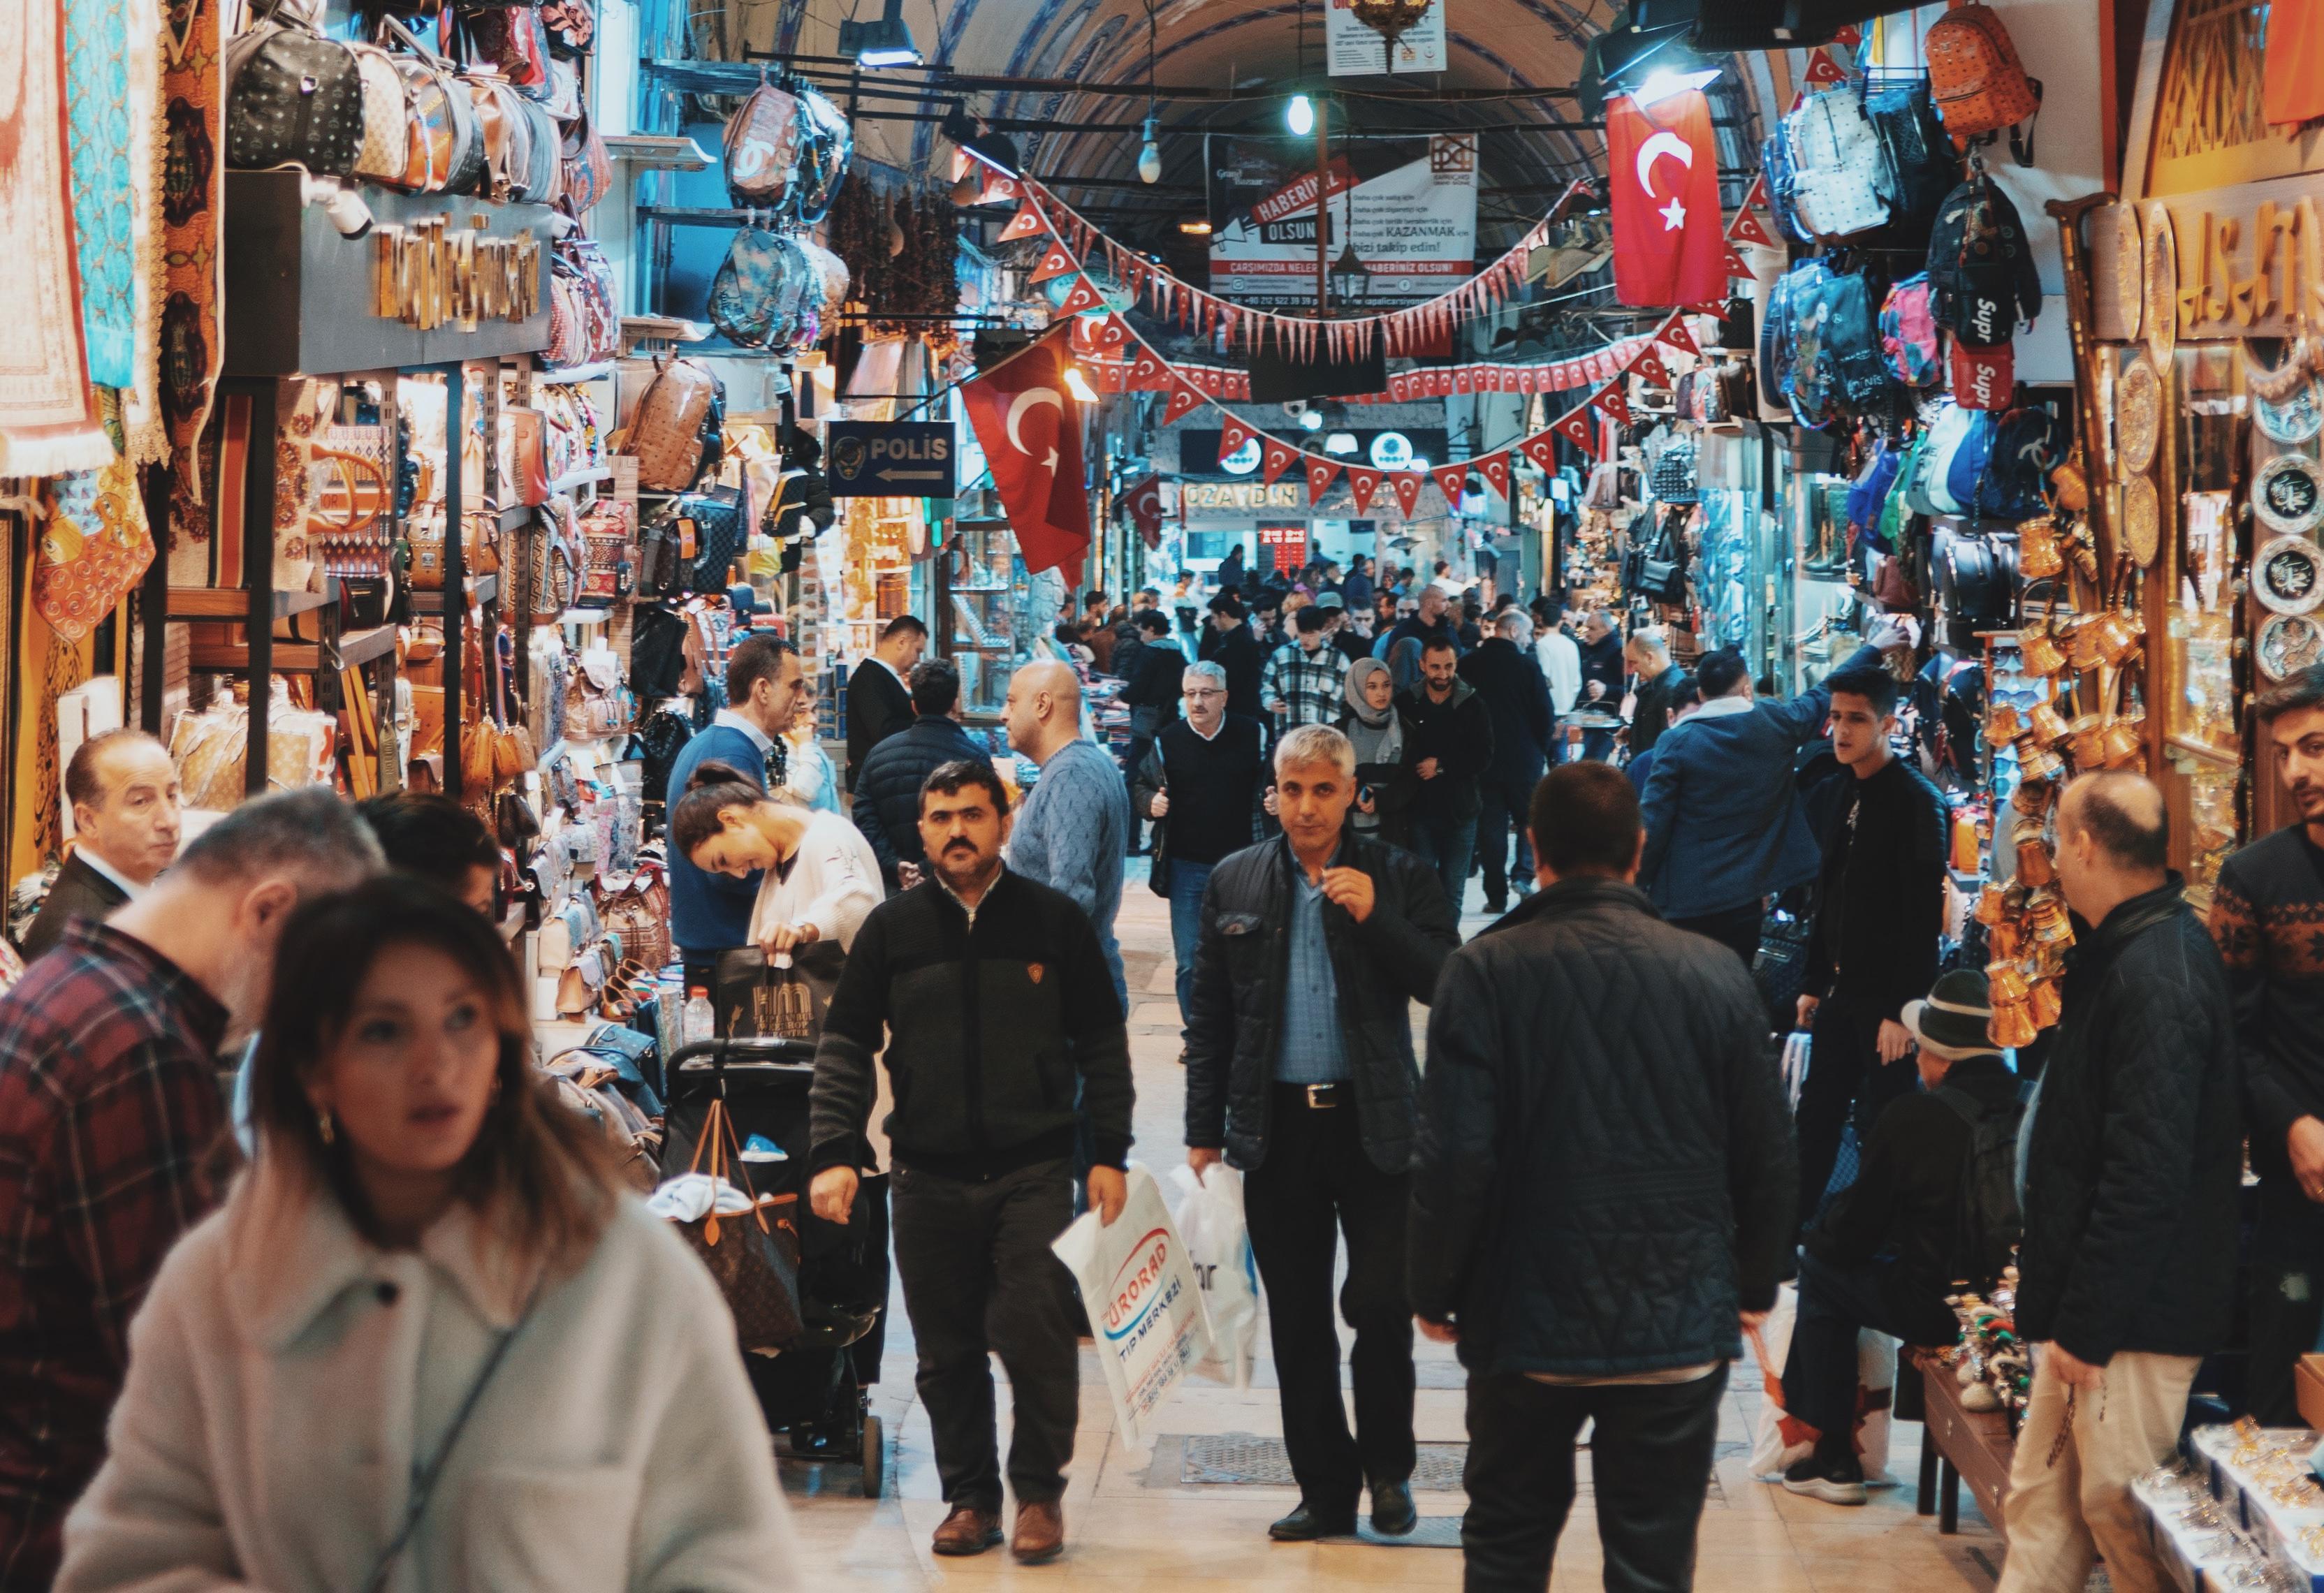 A crowded market in Turkey